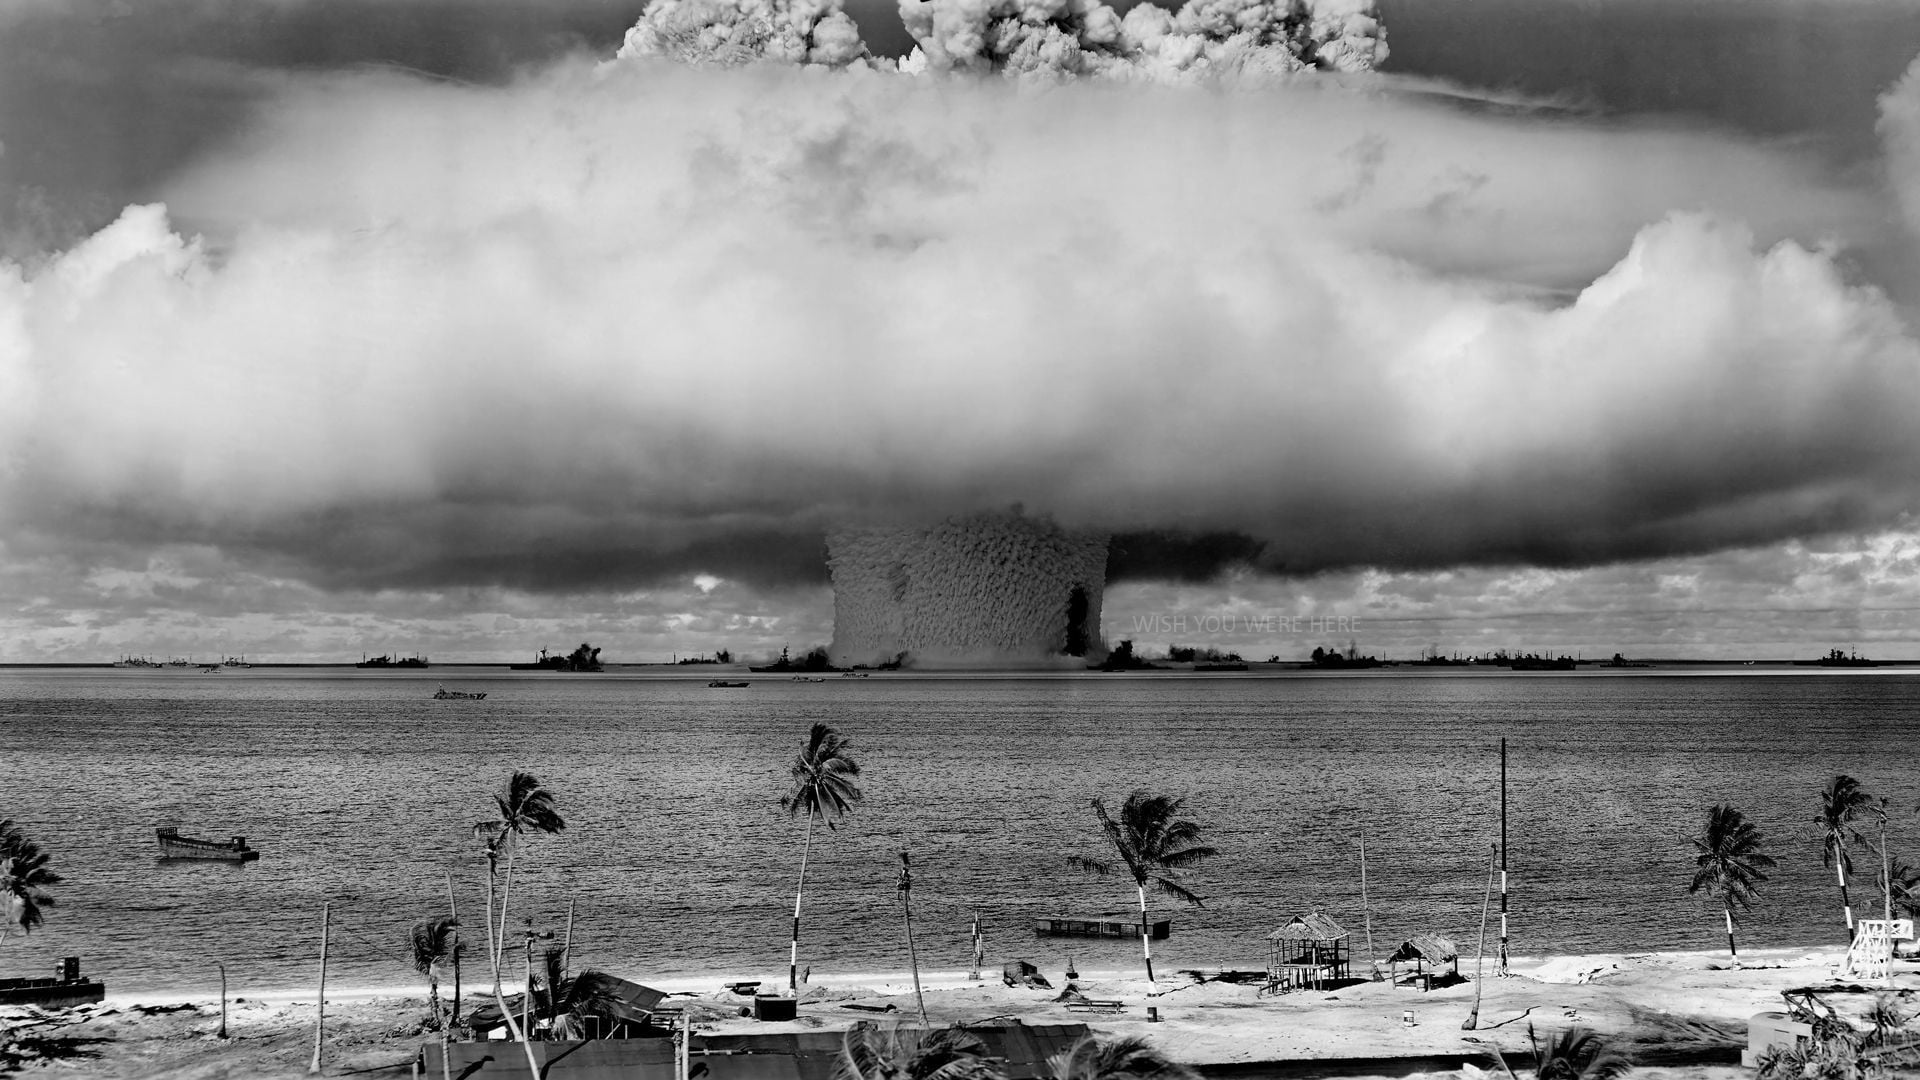 coconut trees, nuclear, bombs, beach, Bikini Atoll, explosion